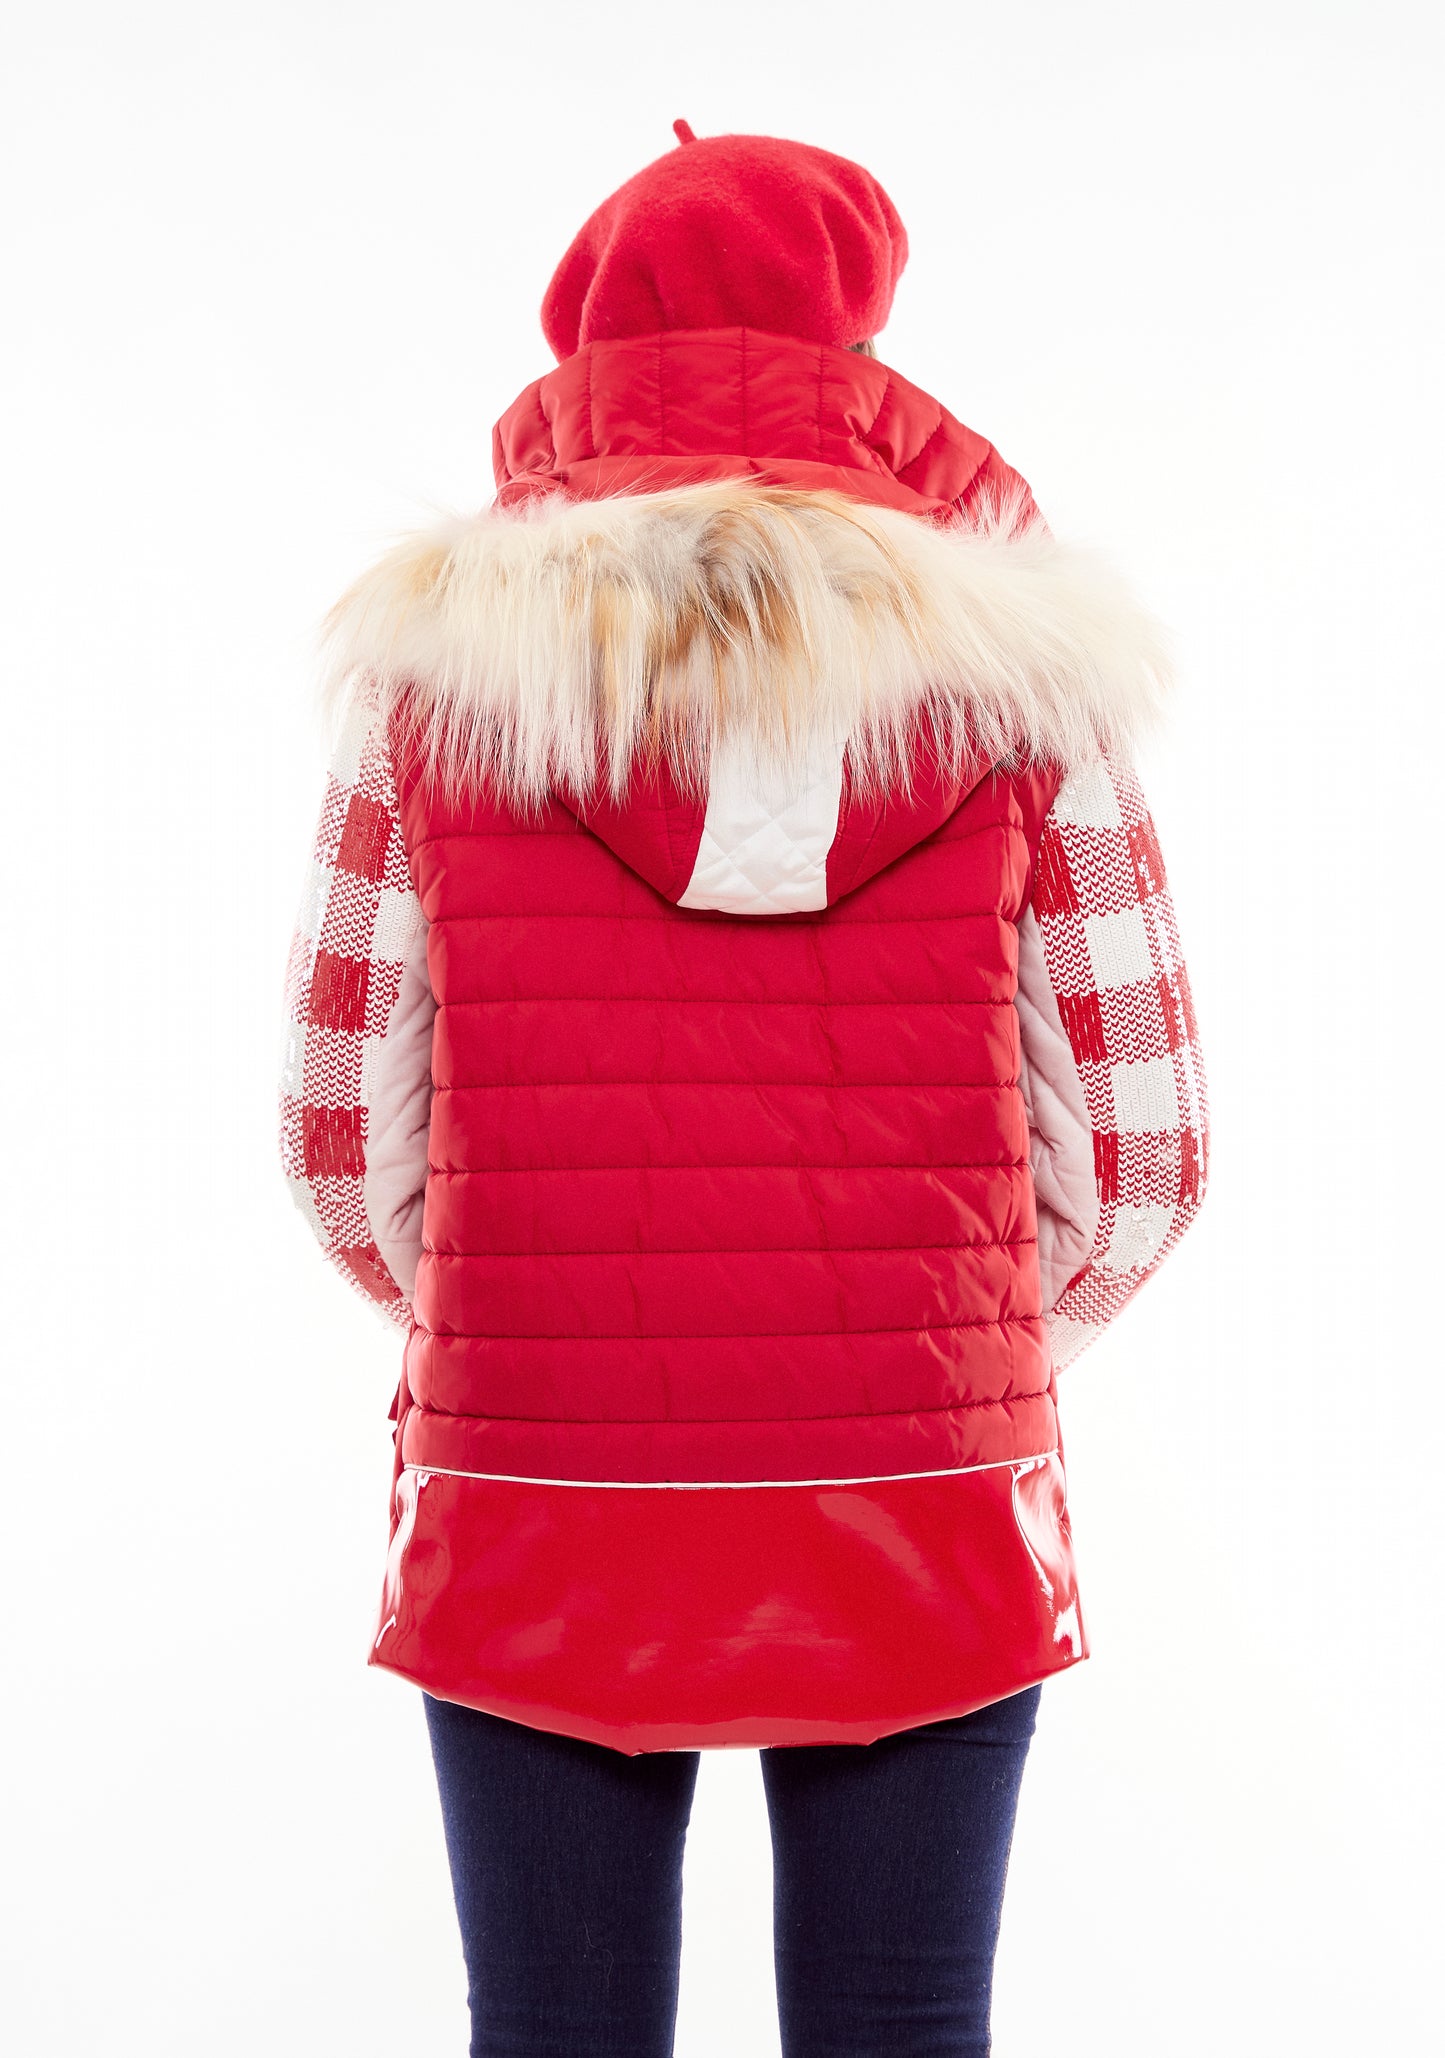 Espalda abrigo rojo y blanco con pelo